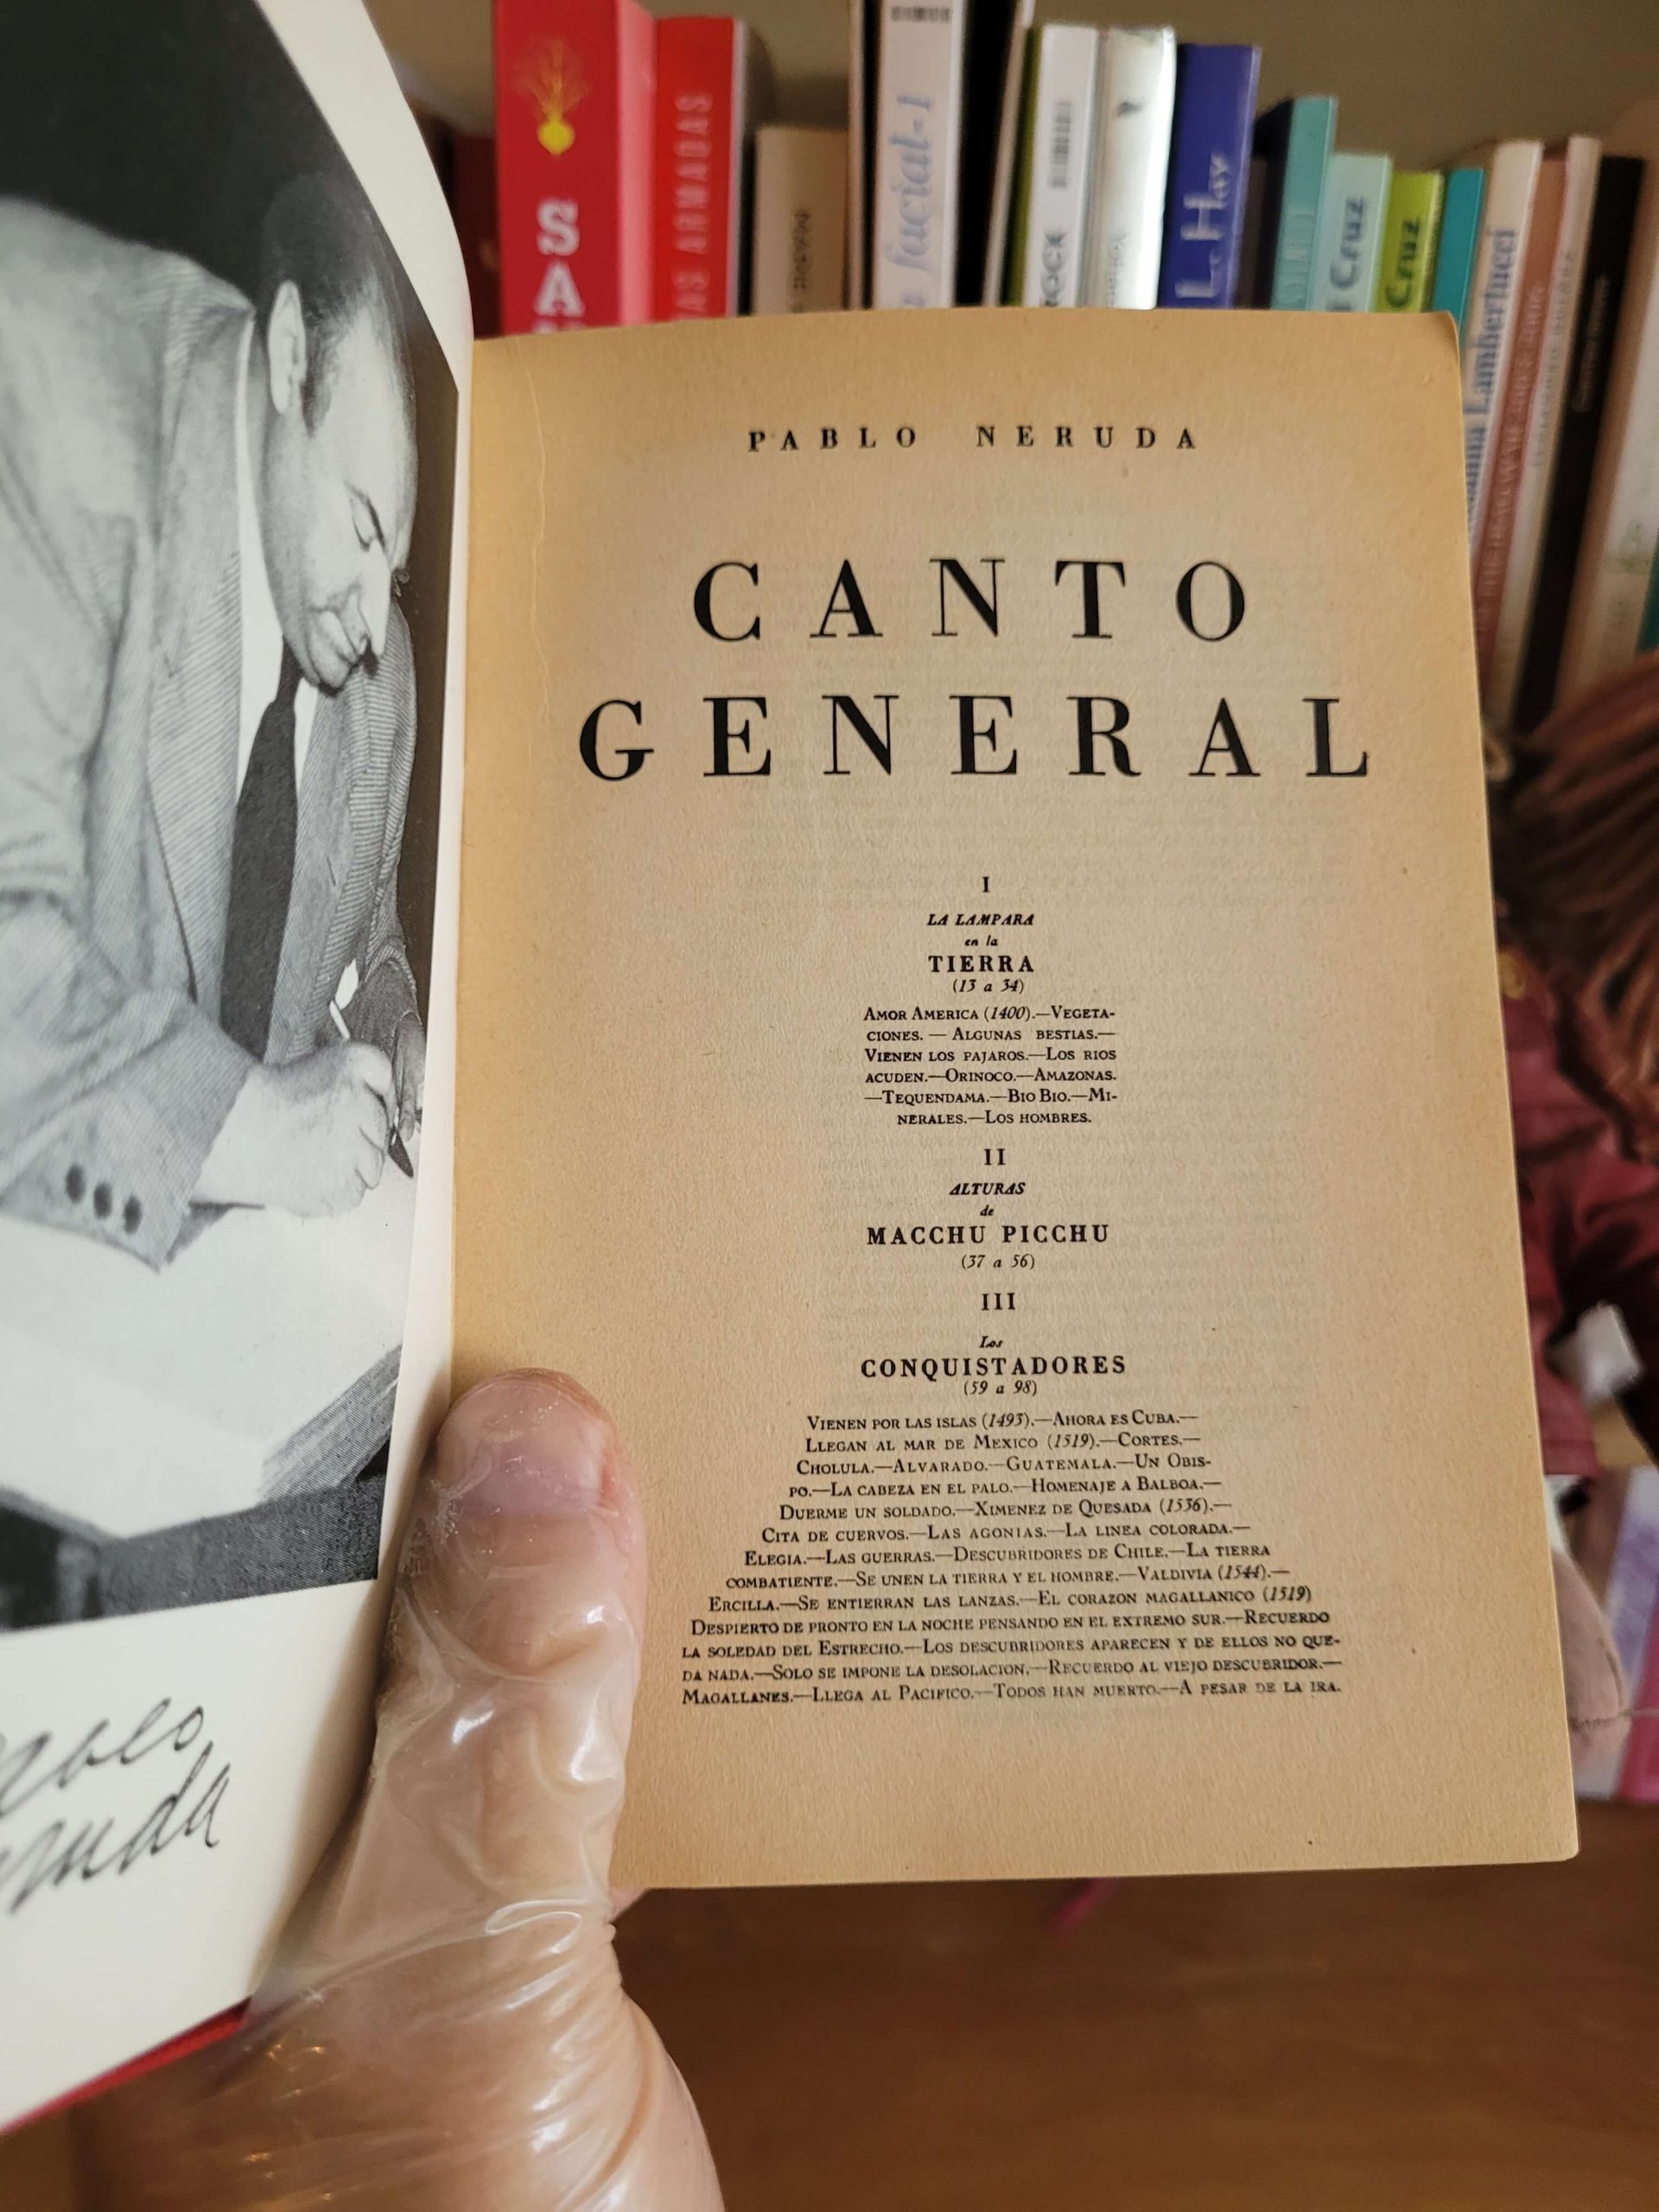 (1952) Canto general (Pablo Neruda)